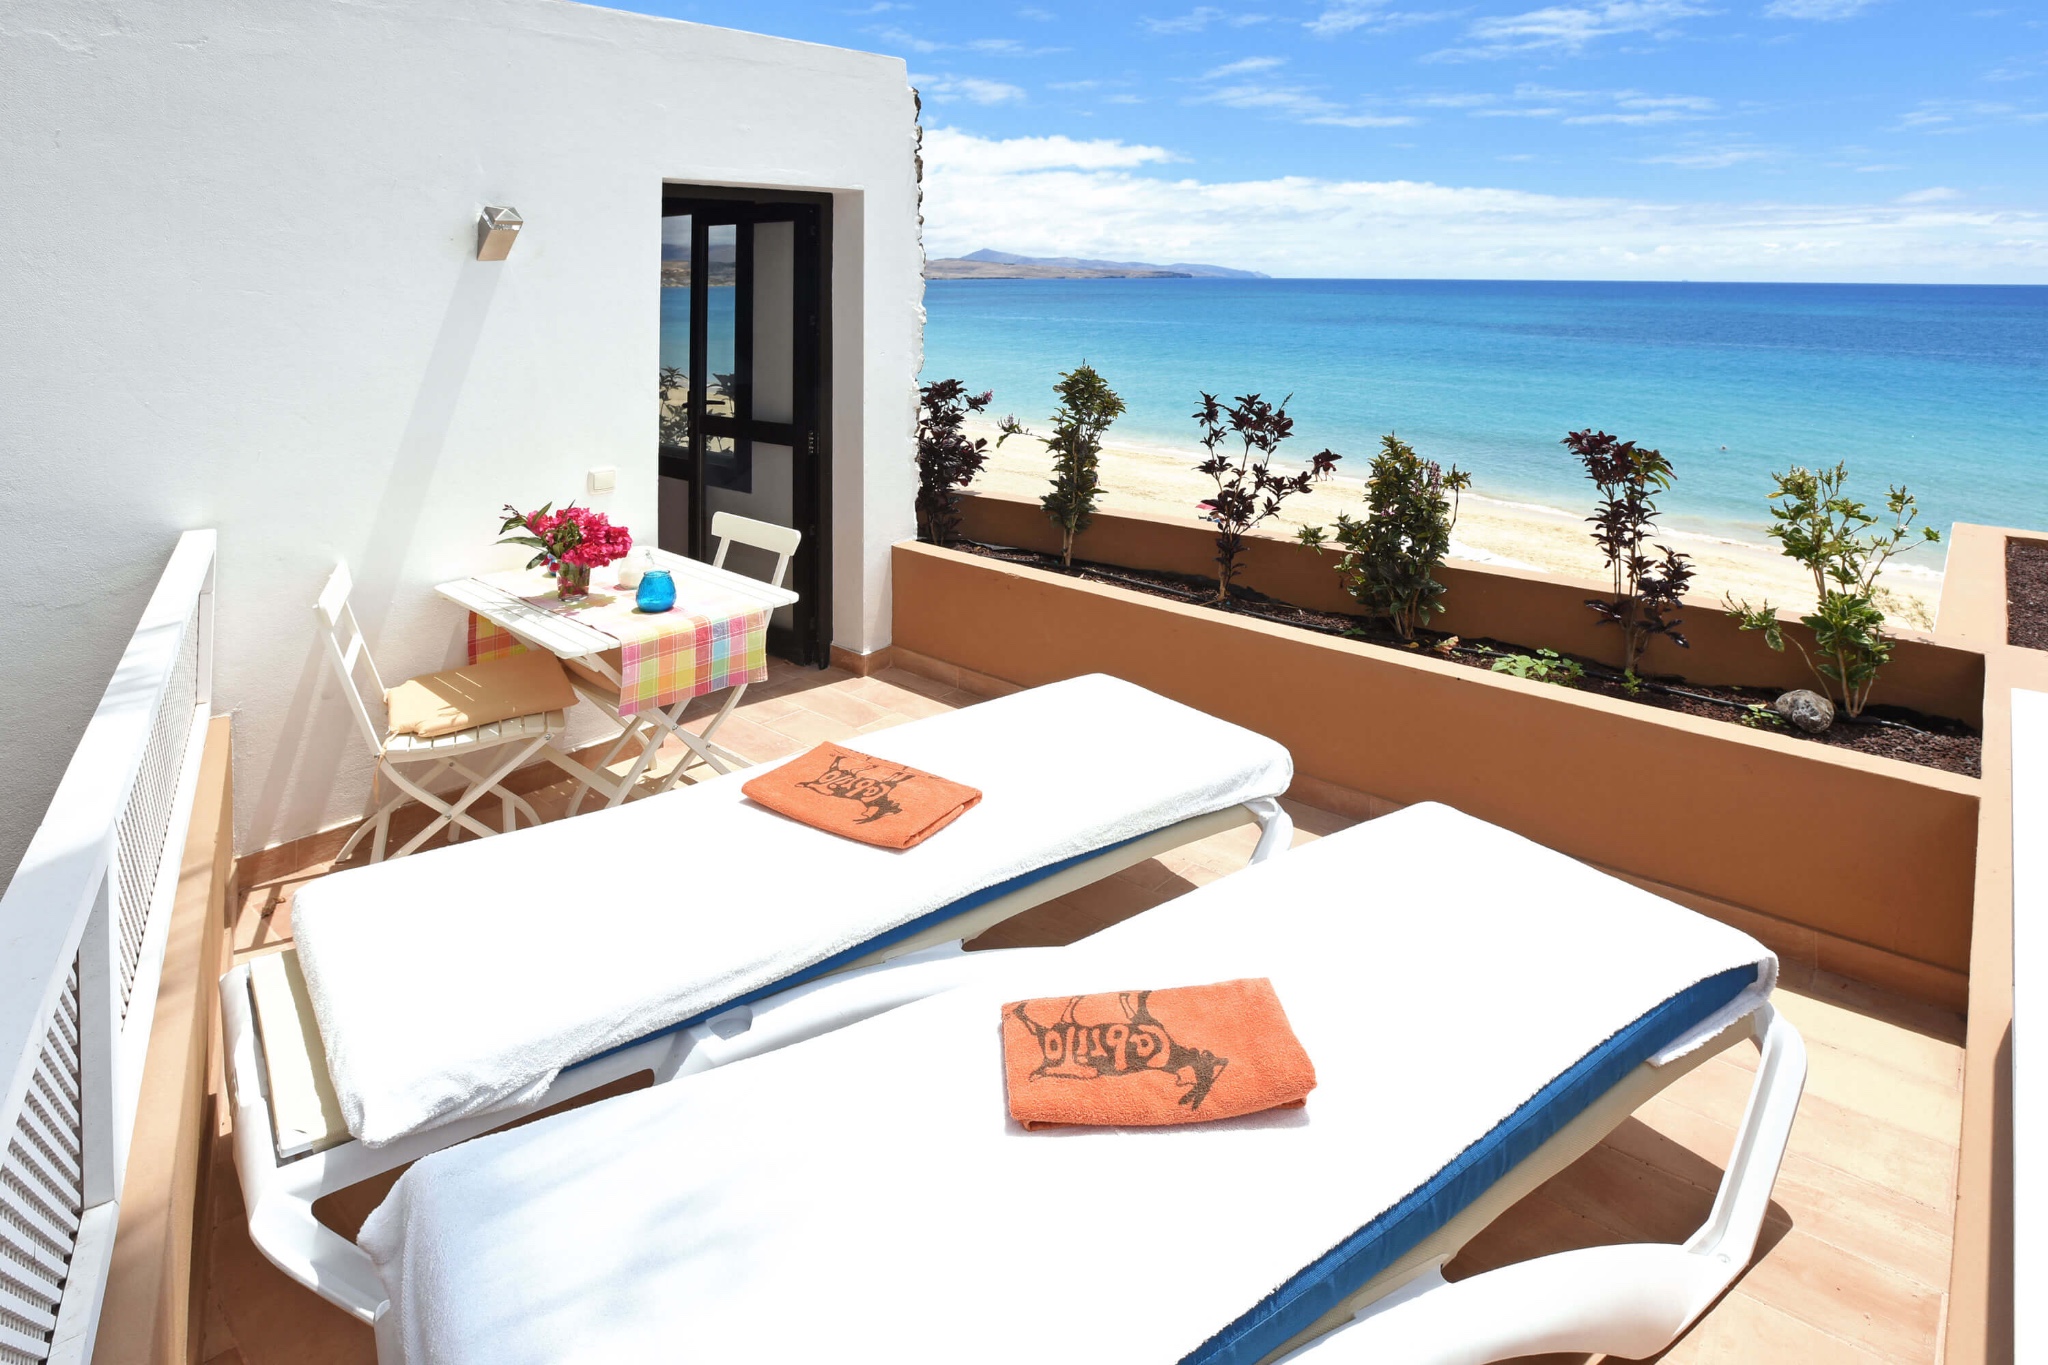 Das moderne Ferienhaus für 2 Personen liegt direkt am Strand von Costa Calma mit herrlichem Meerblick